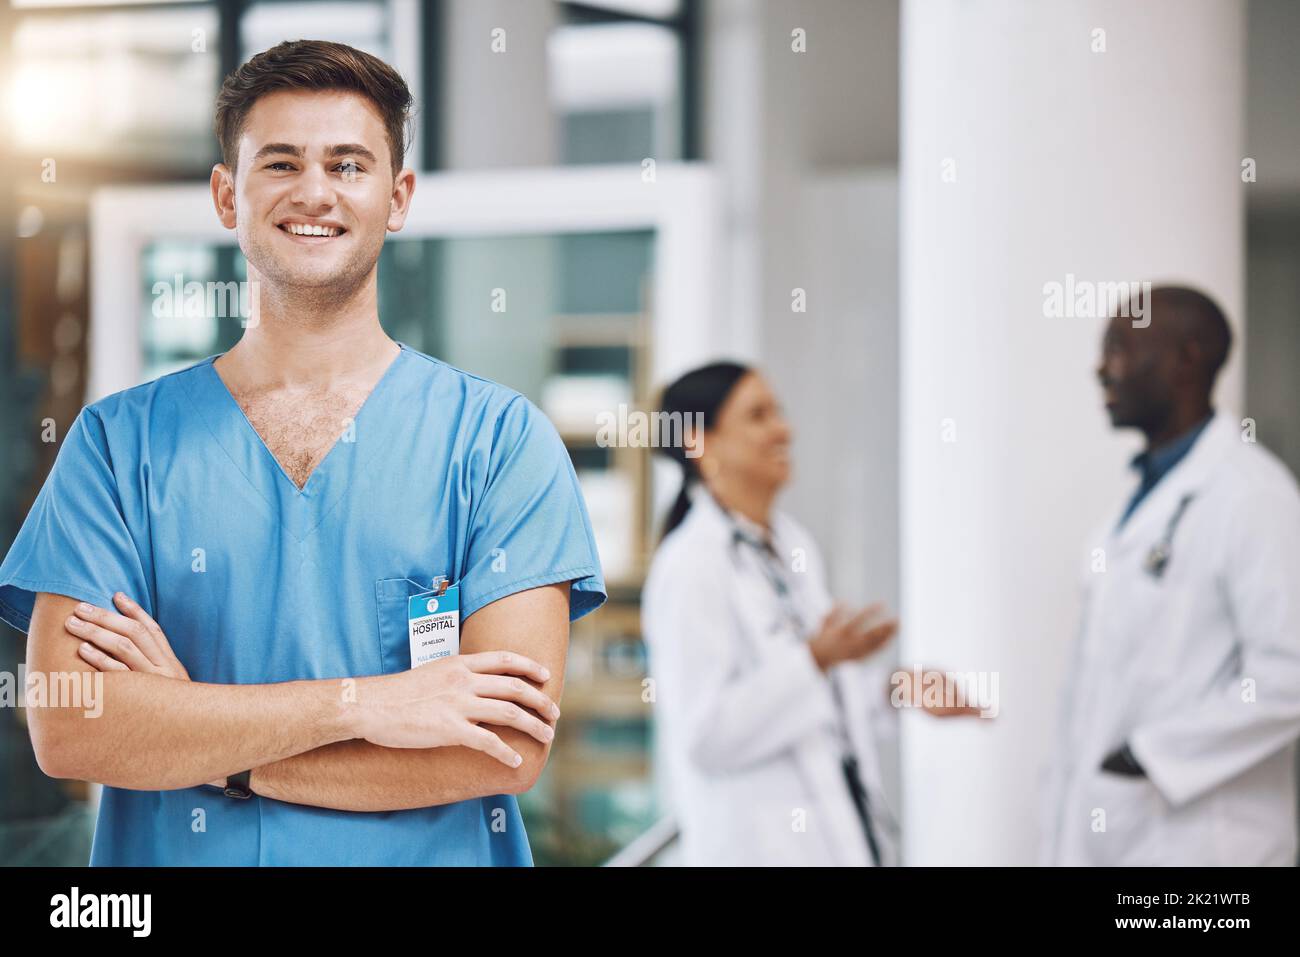 Porträt eines Krankenpflegers mit seinem Team im Hintergrund im Krankenhaus. Glücklich, lächelnd und zuversichtlich Krankenschwester mit Ärzten in Medizin, Gesundheit und Stockfoto